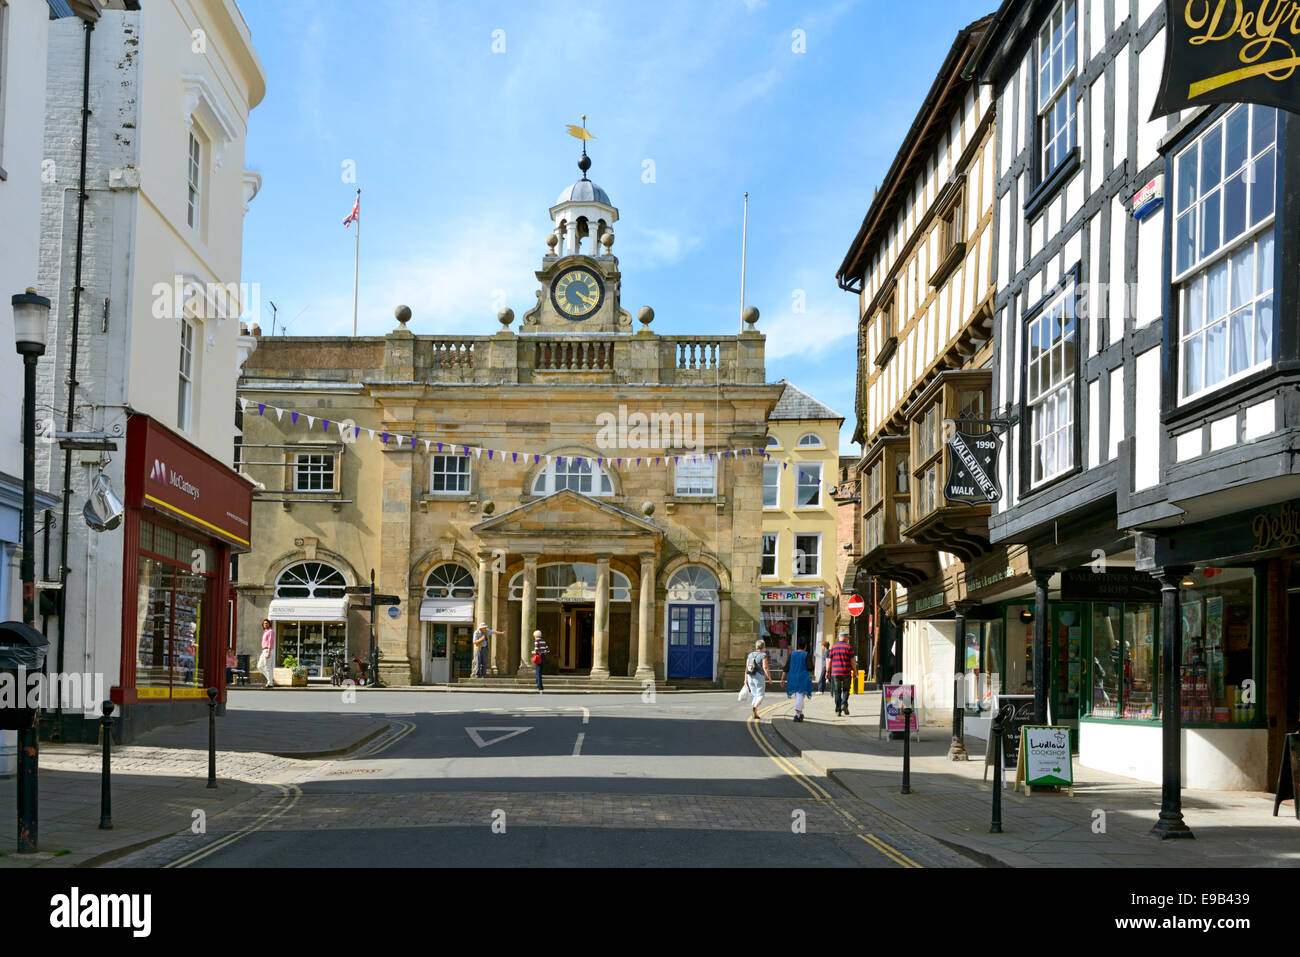 Le Beurre Cross, anciennement les villes marché du beurre, rue Large, Ludlow, Shropshire, Angleterre, Royaume-Uni. Royaume-uni, Europe Banque D'Images